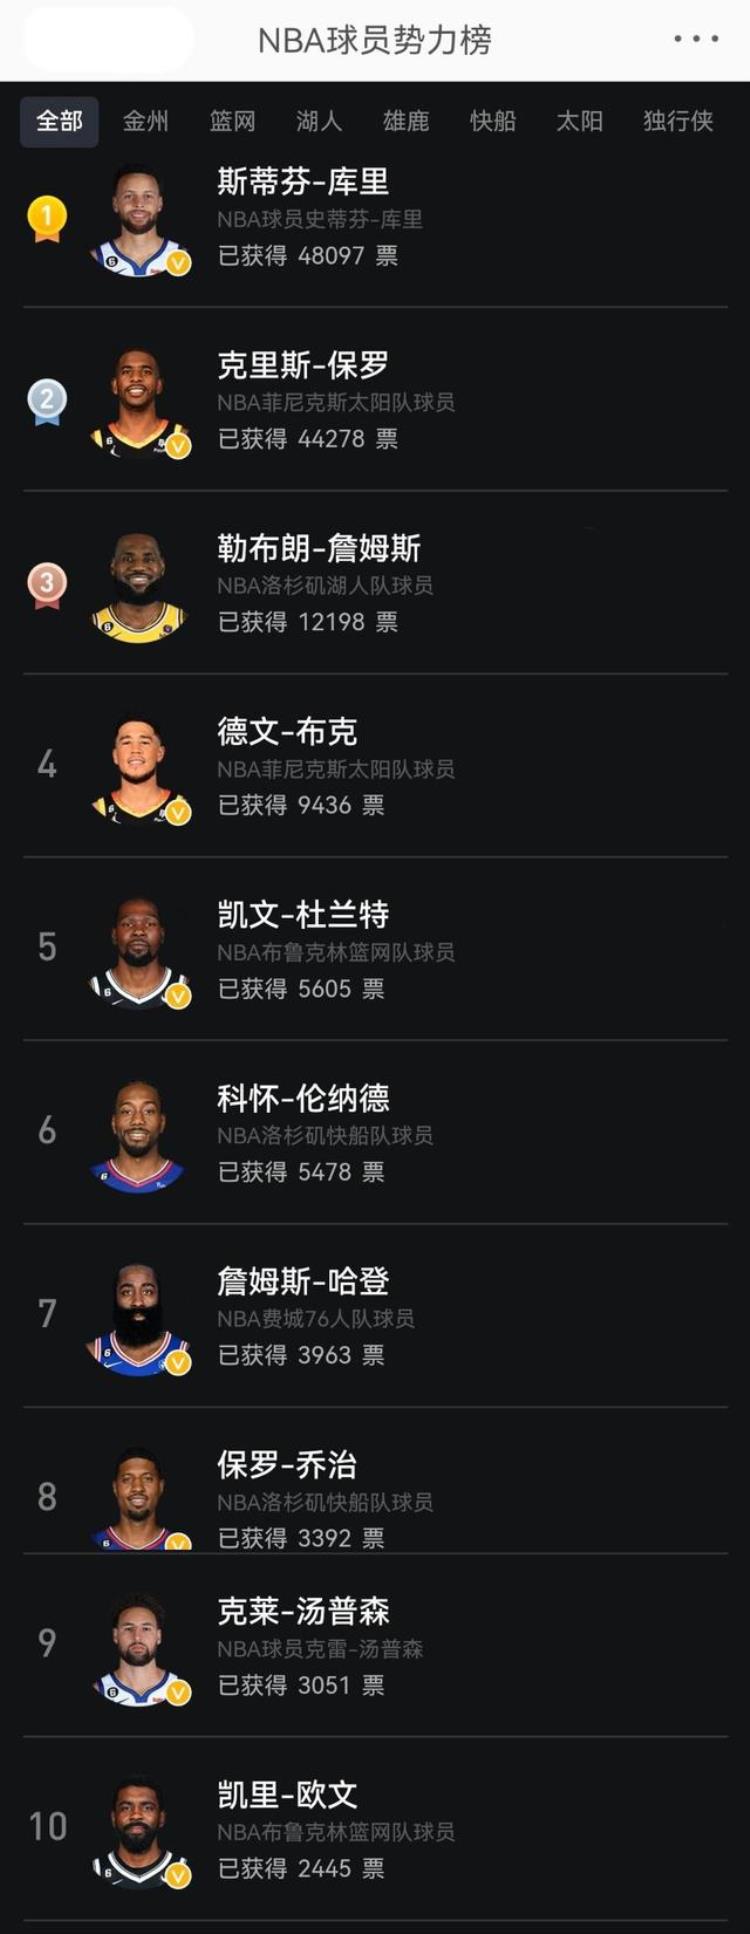 NBA球员势力榜Top10库里高票数领衔第1詹姆斯第3哈登排第7